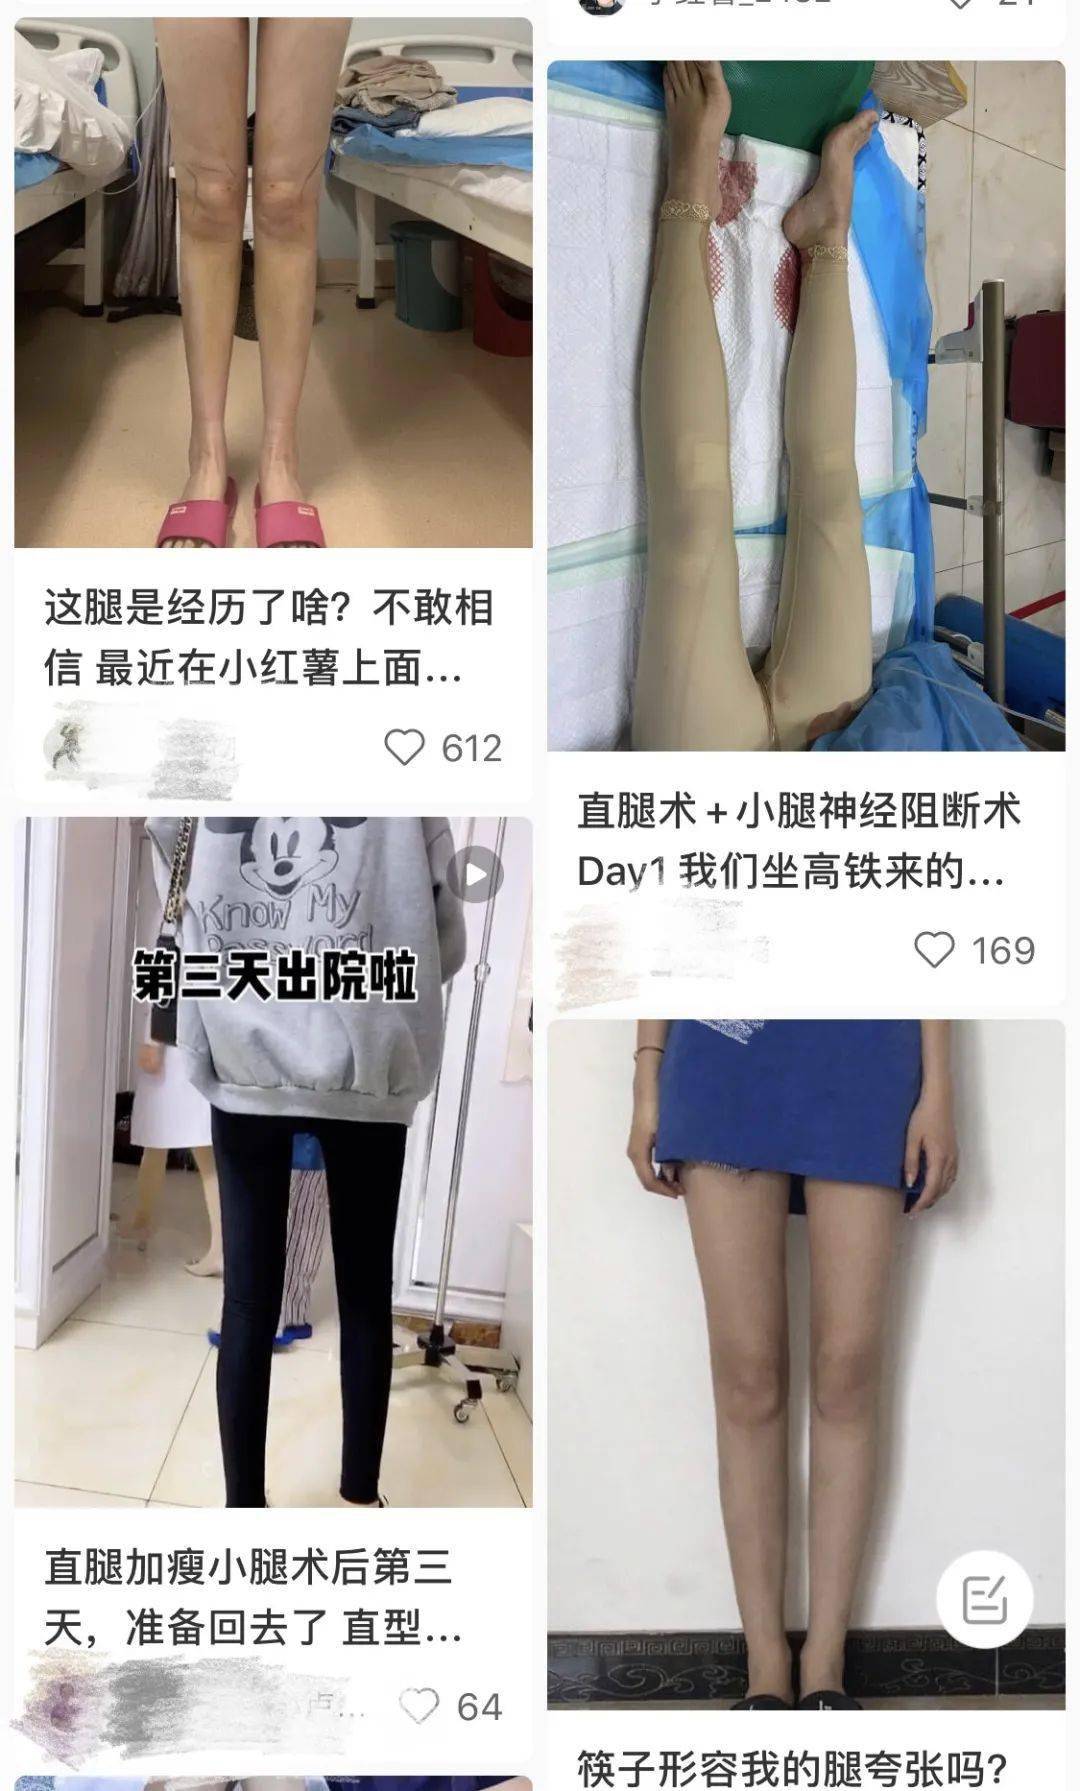 节食减肥垫高颅顶直腿手术永远焦虑的中国女孩